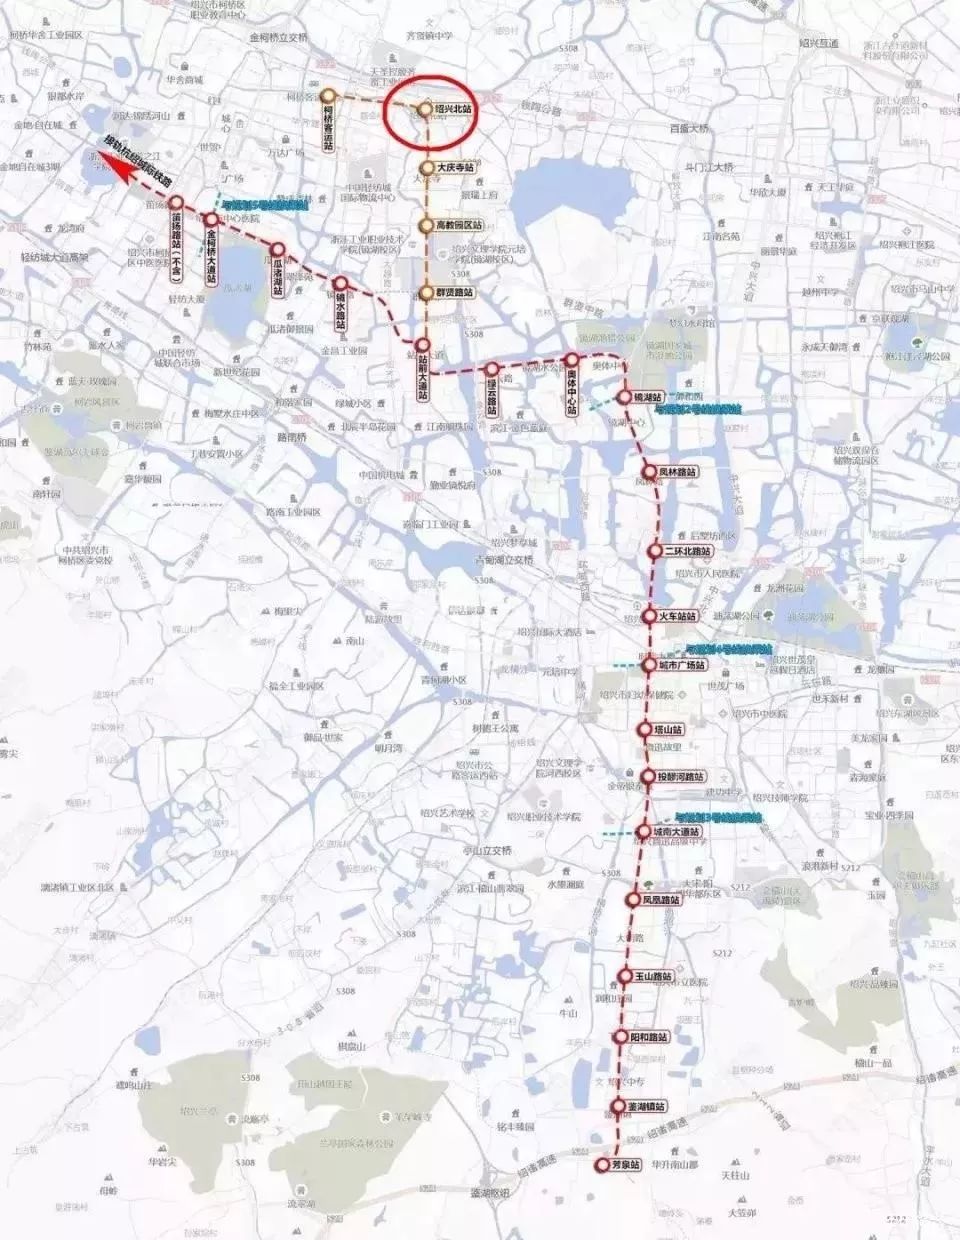 绍兴地铁线连入绍兴北站,地铁全线有可能最早10月份开工,预计2022